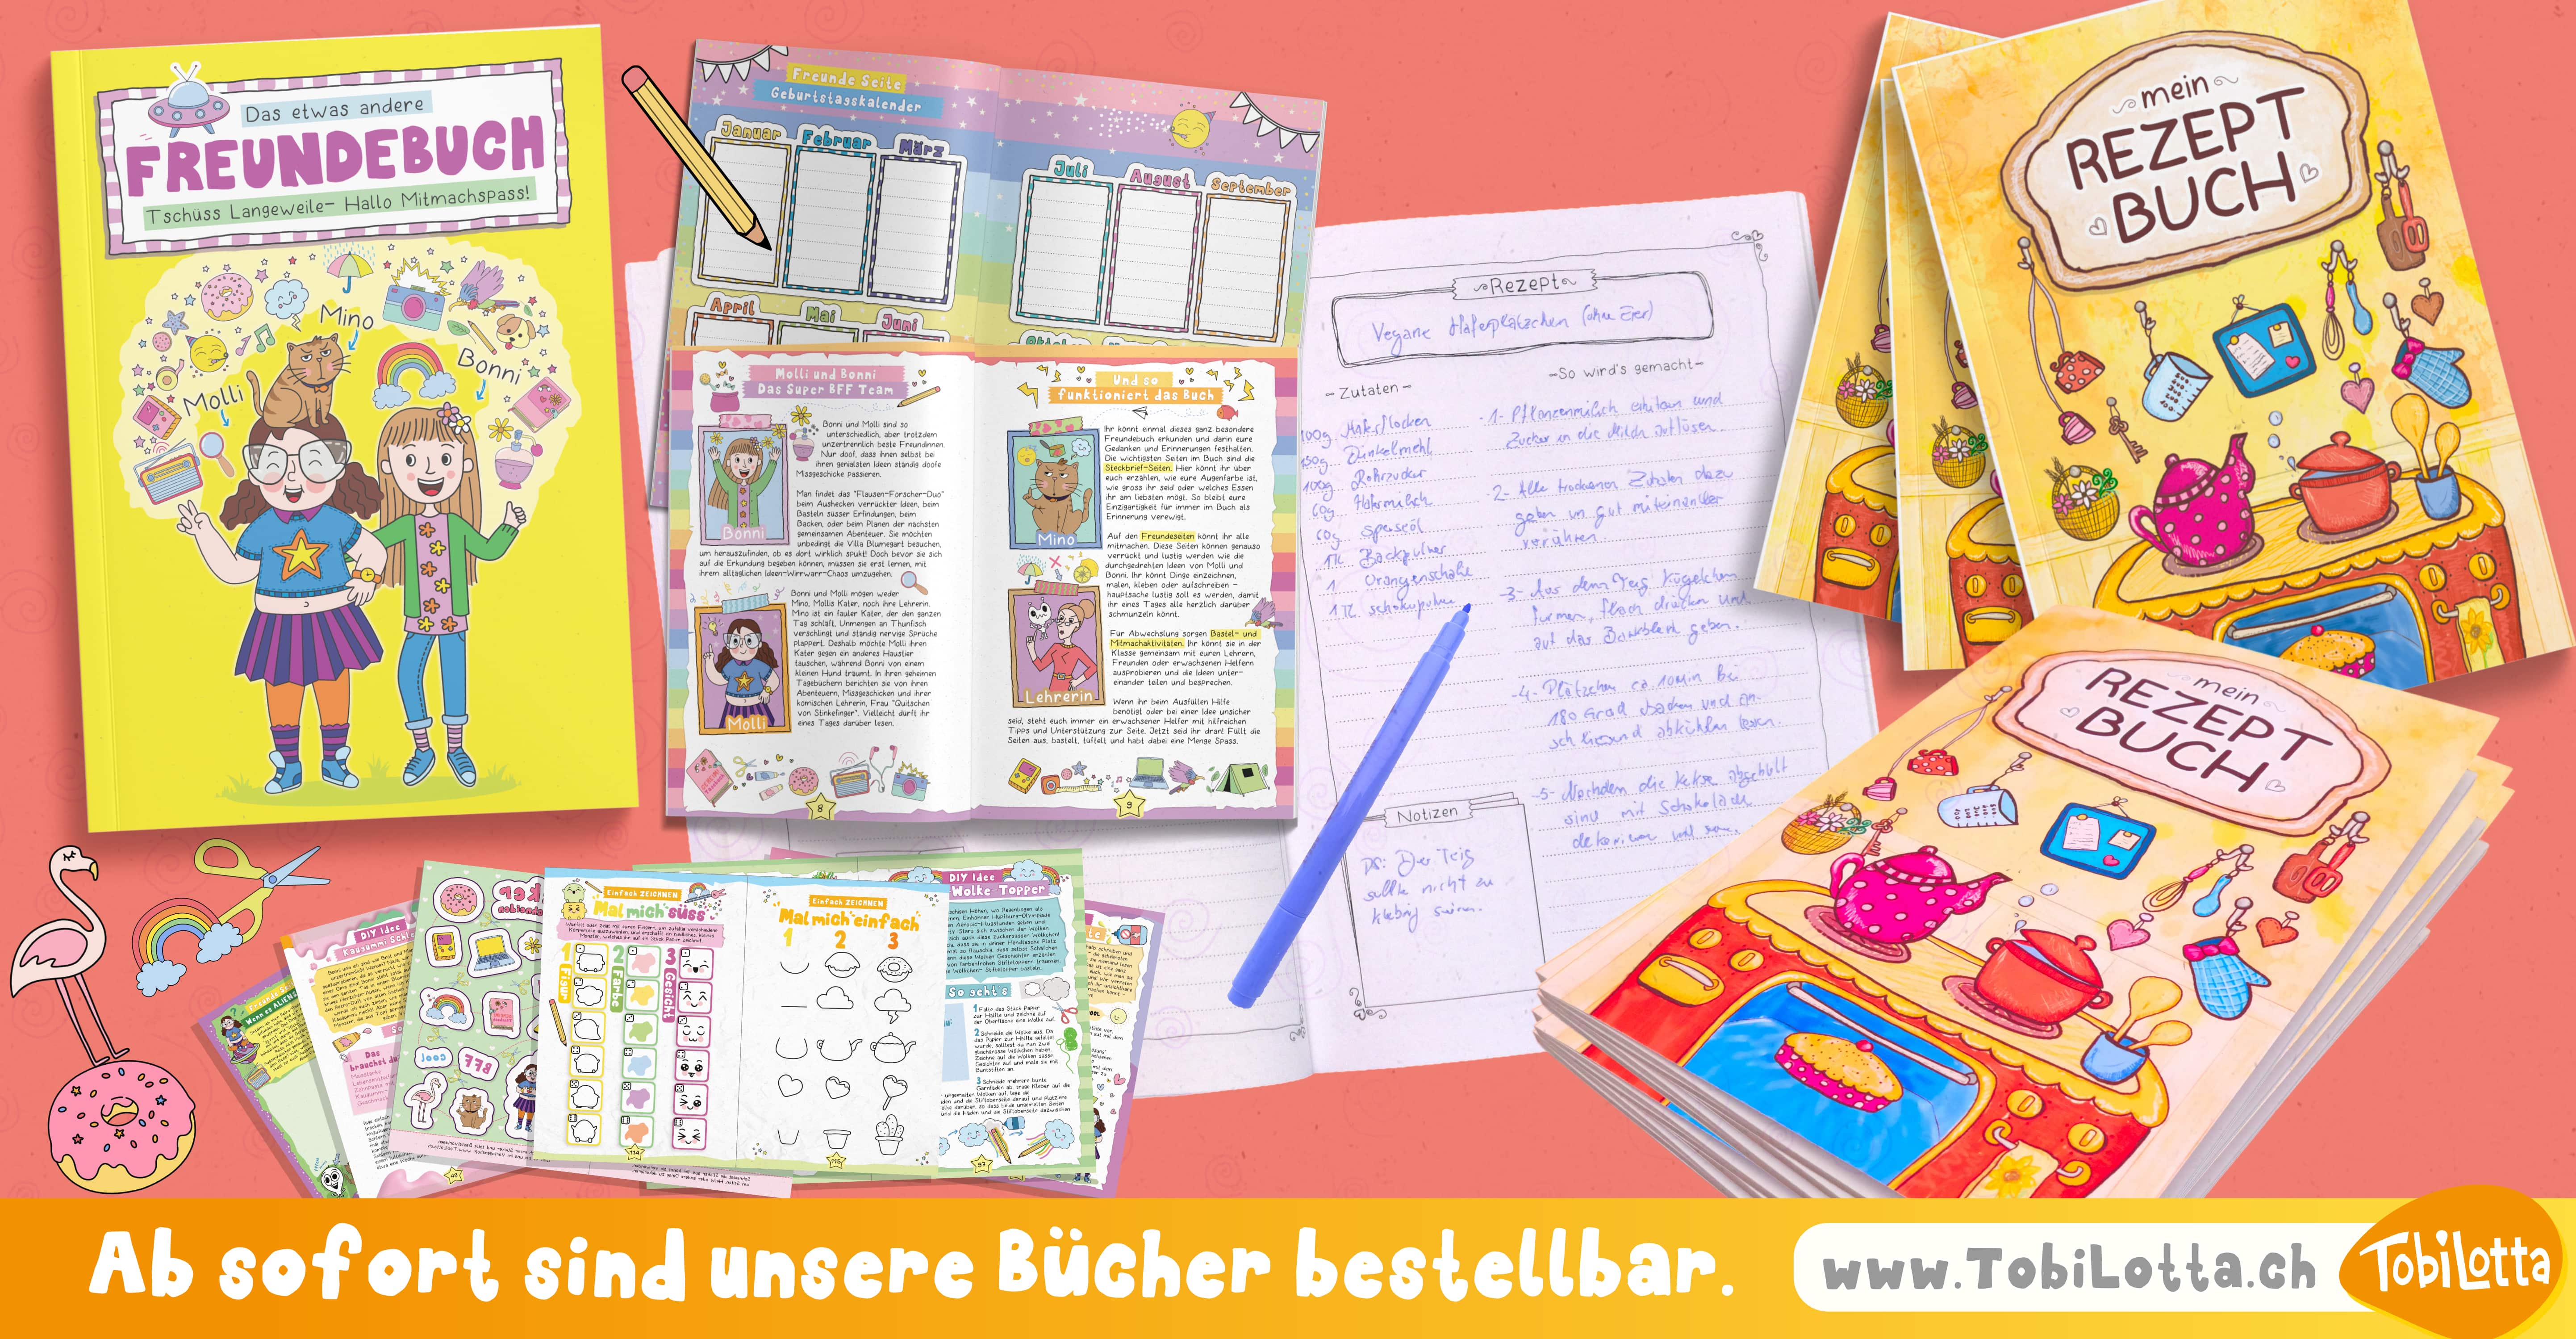 TobiLotta Buch Kinderbücher rezeptbuch rezeptbücher zum selberschreiben diy rezeptbuch 